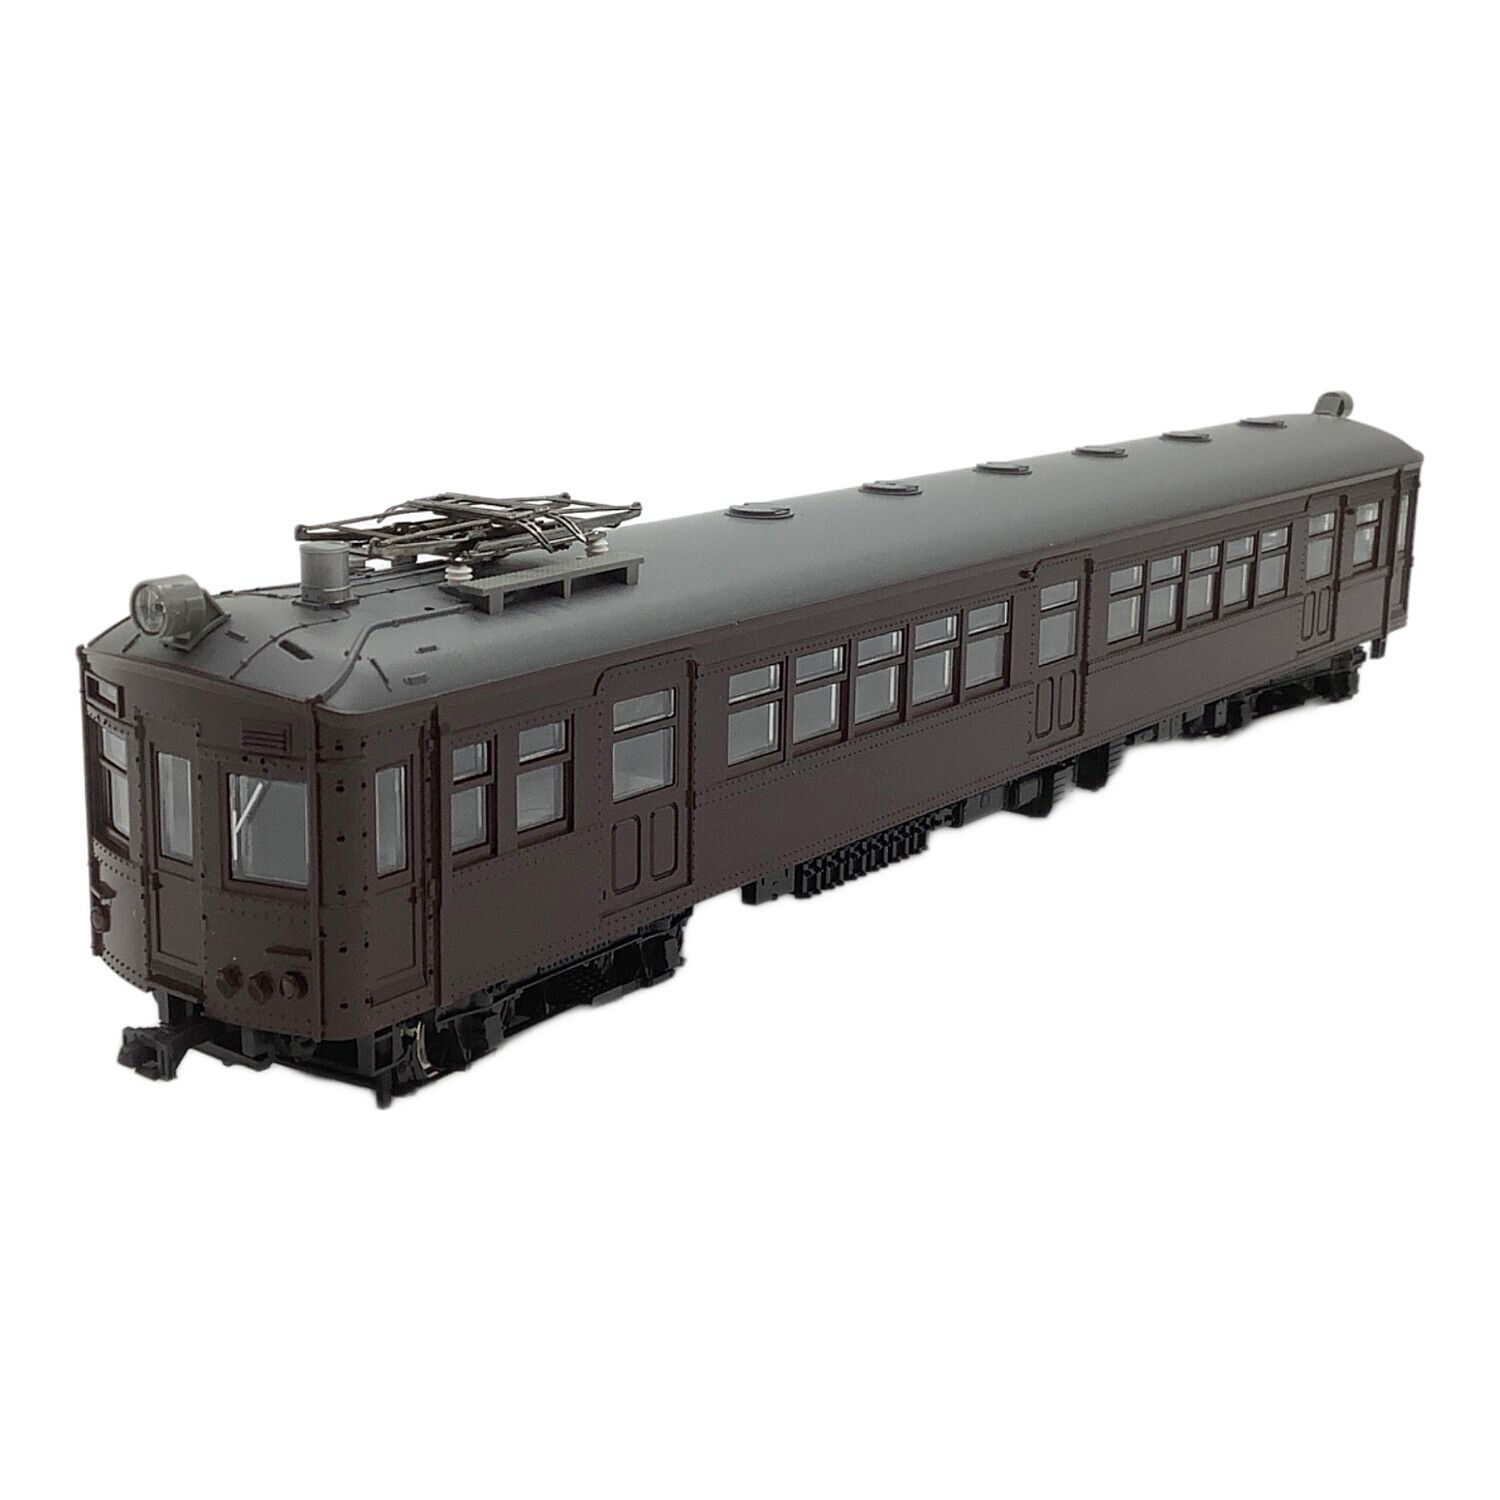 1-410 (HO)クモハ40(M) HOゲージ 鉄道模型 KATO(カトー)